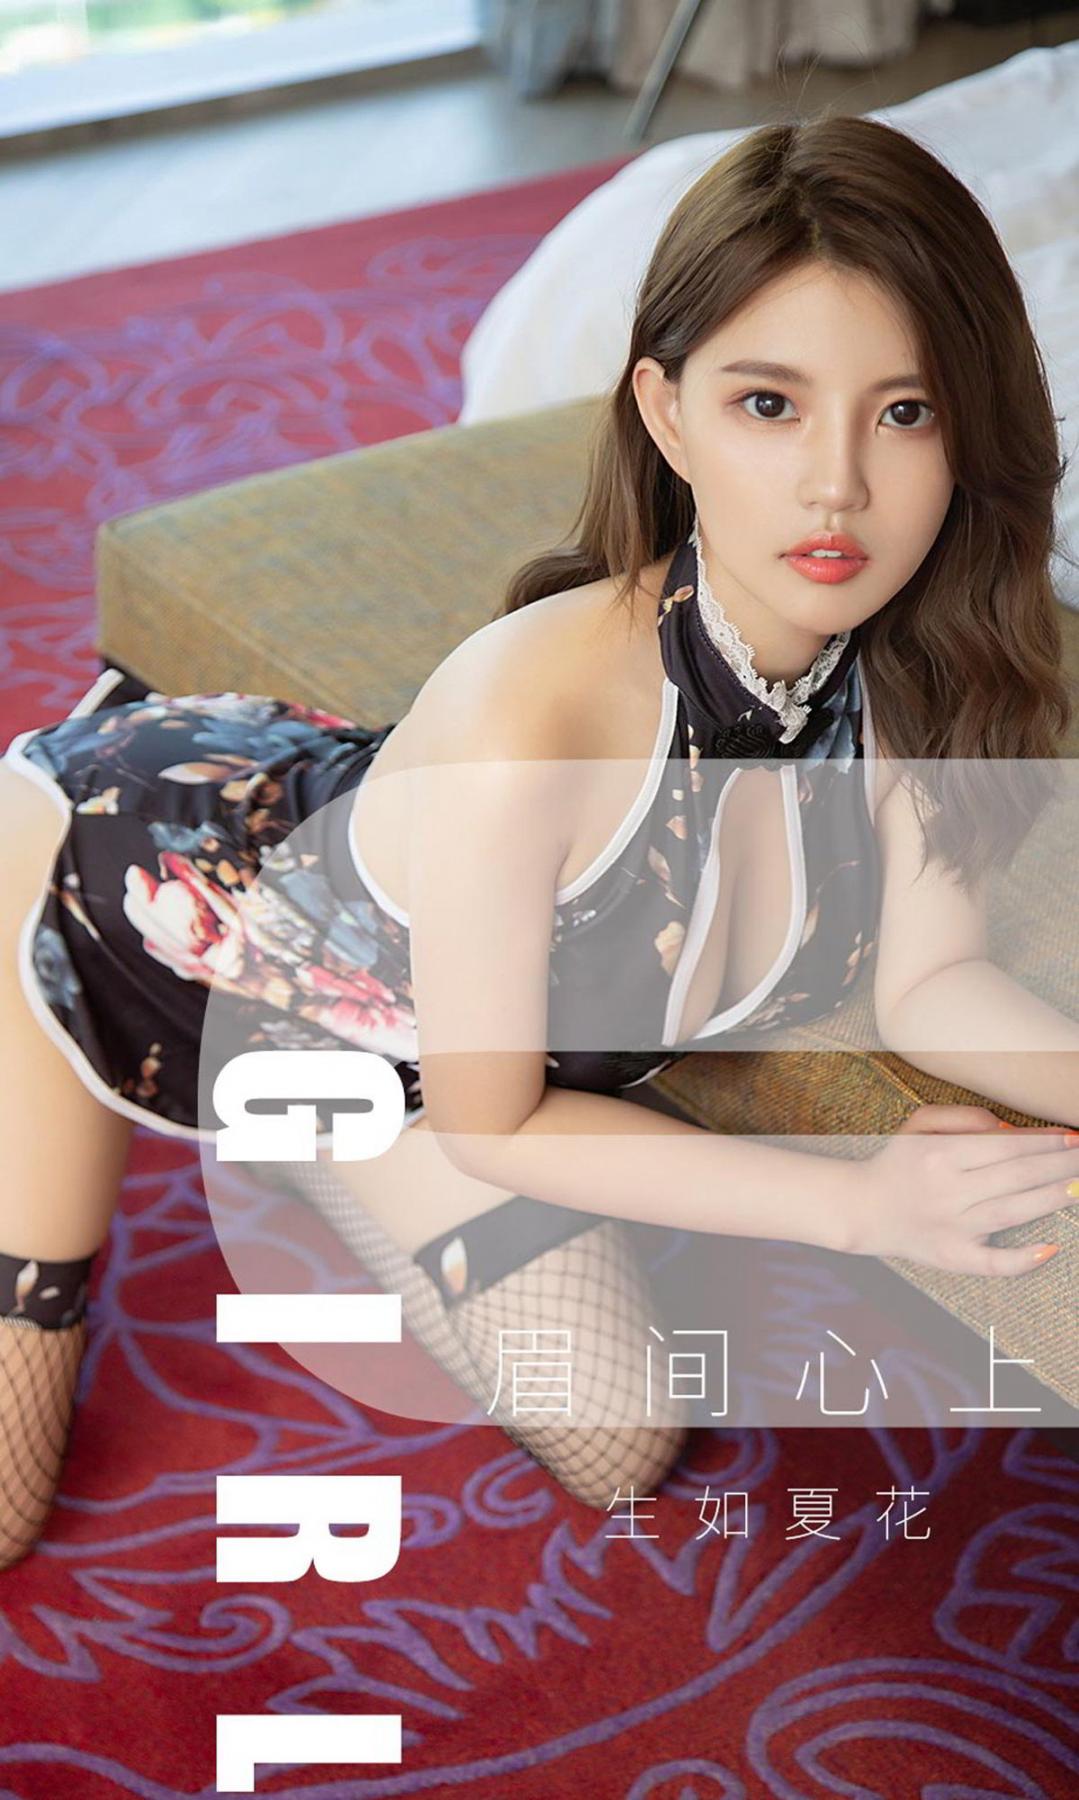 Ugirls App Vol.1530 Sheng Ru Xia Hua